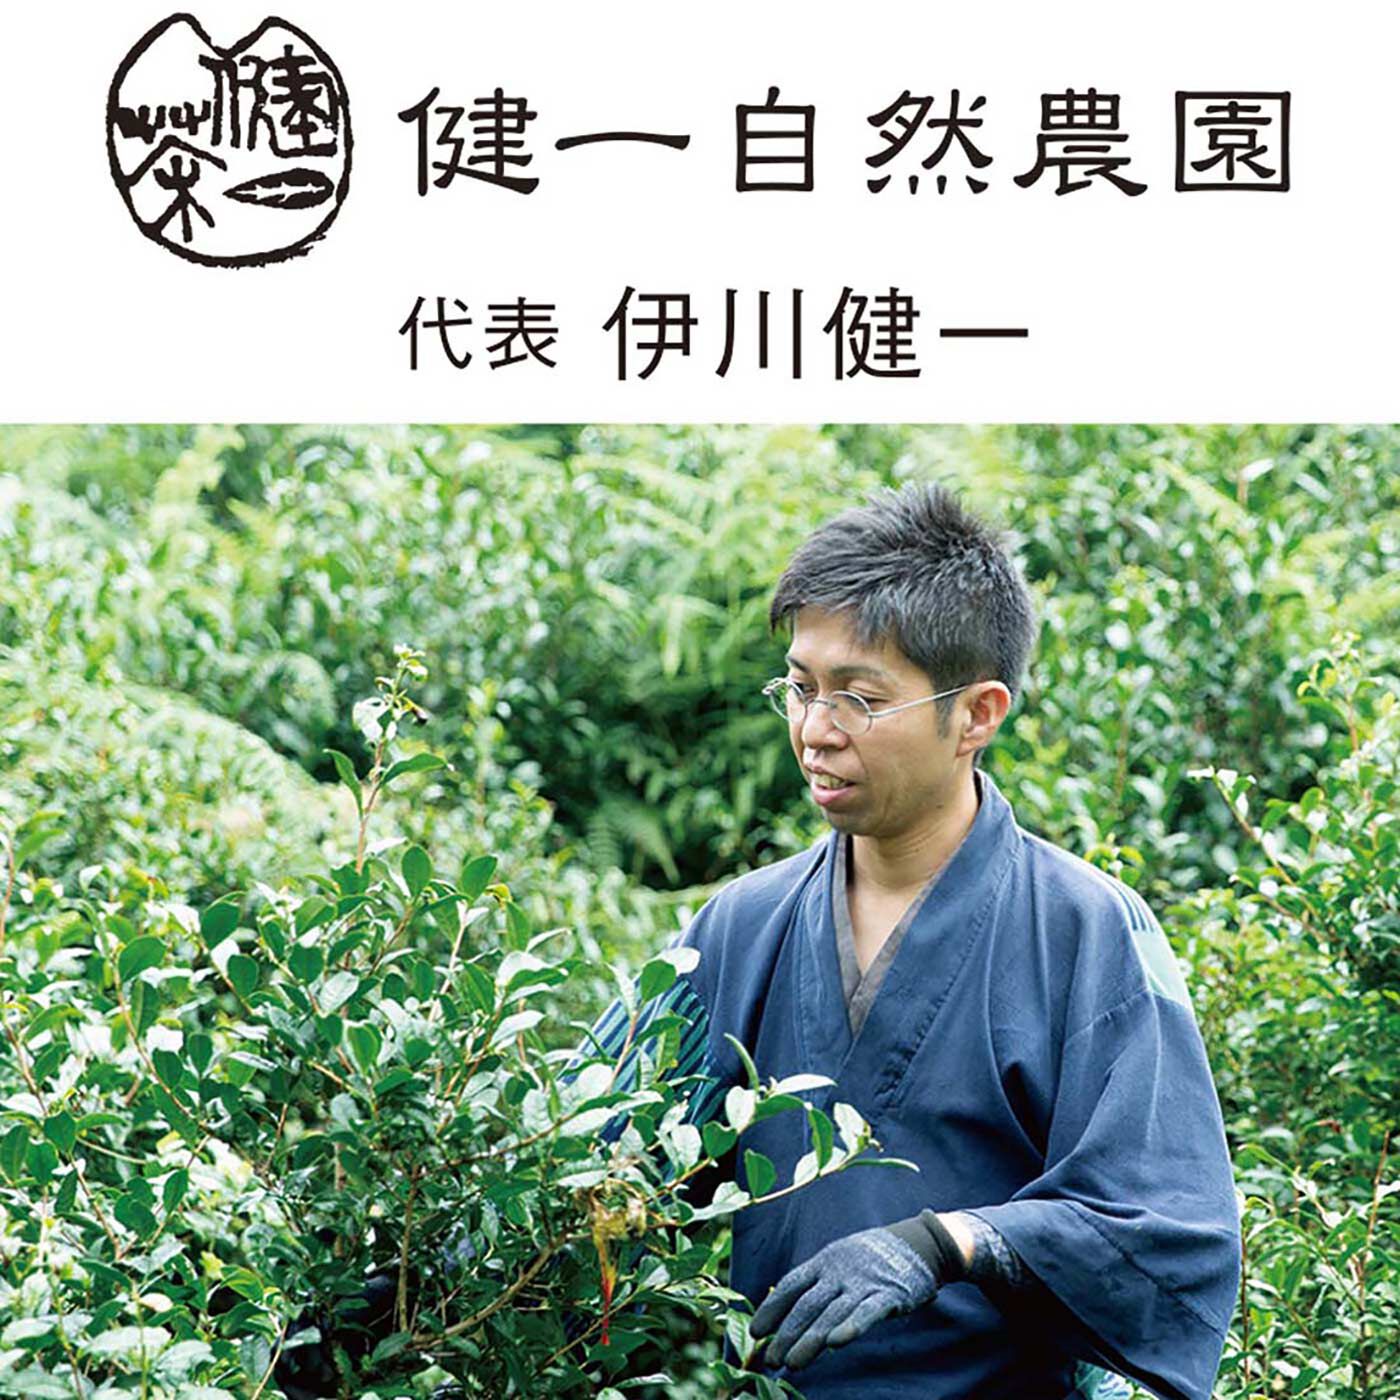 フェリシモの雑貨 Kraso|健一自然農園Ｘフェリシモ　豊かな未来をつくるお茶セット〈ティーバッグ〉の会|「健一自然農園」は、奈良県北東部に広がる「大和高原」にあります。2001年、15年ほど放棄されていた耕作放棄農地の活用からはじまり、その後も地域の茶園を受け継ぎ「自然栽培」でお茶を育てています。「自然栽培」という言葉には、法律では定義がなされていないため第三者認証がありませんが、健一自然農園が行なっているのは、農薬・肥料を使わず、大地やさまざまな生きものと調和してお茶を育てる栽培方法です。